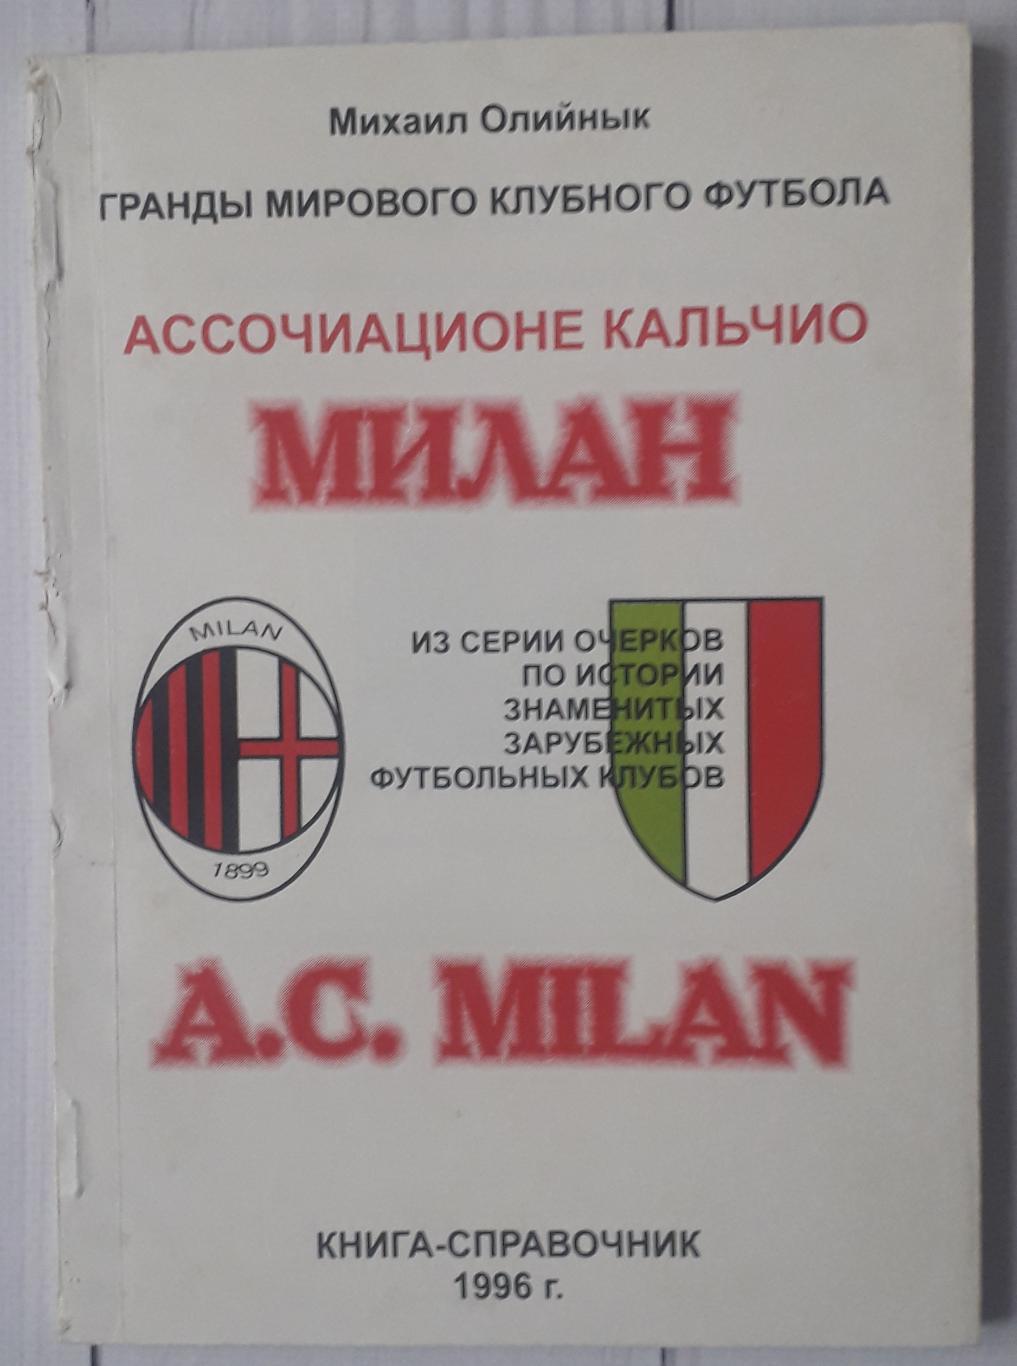 Михаил Олийнык - Милан. Гранды мирового футбола. 1996